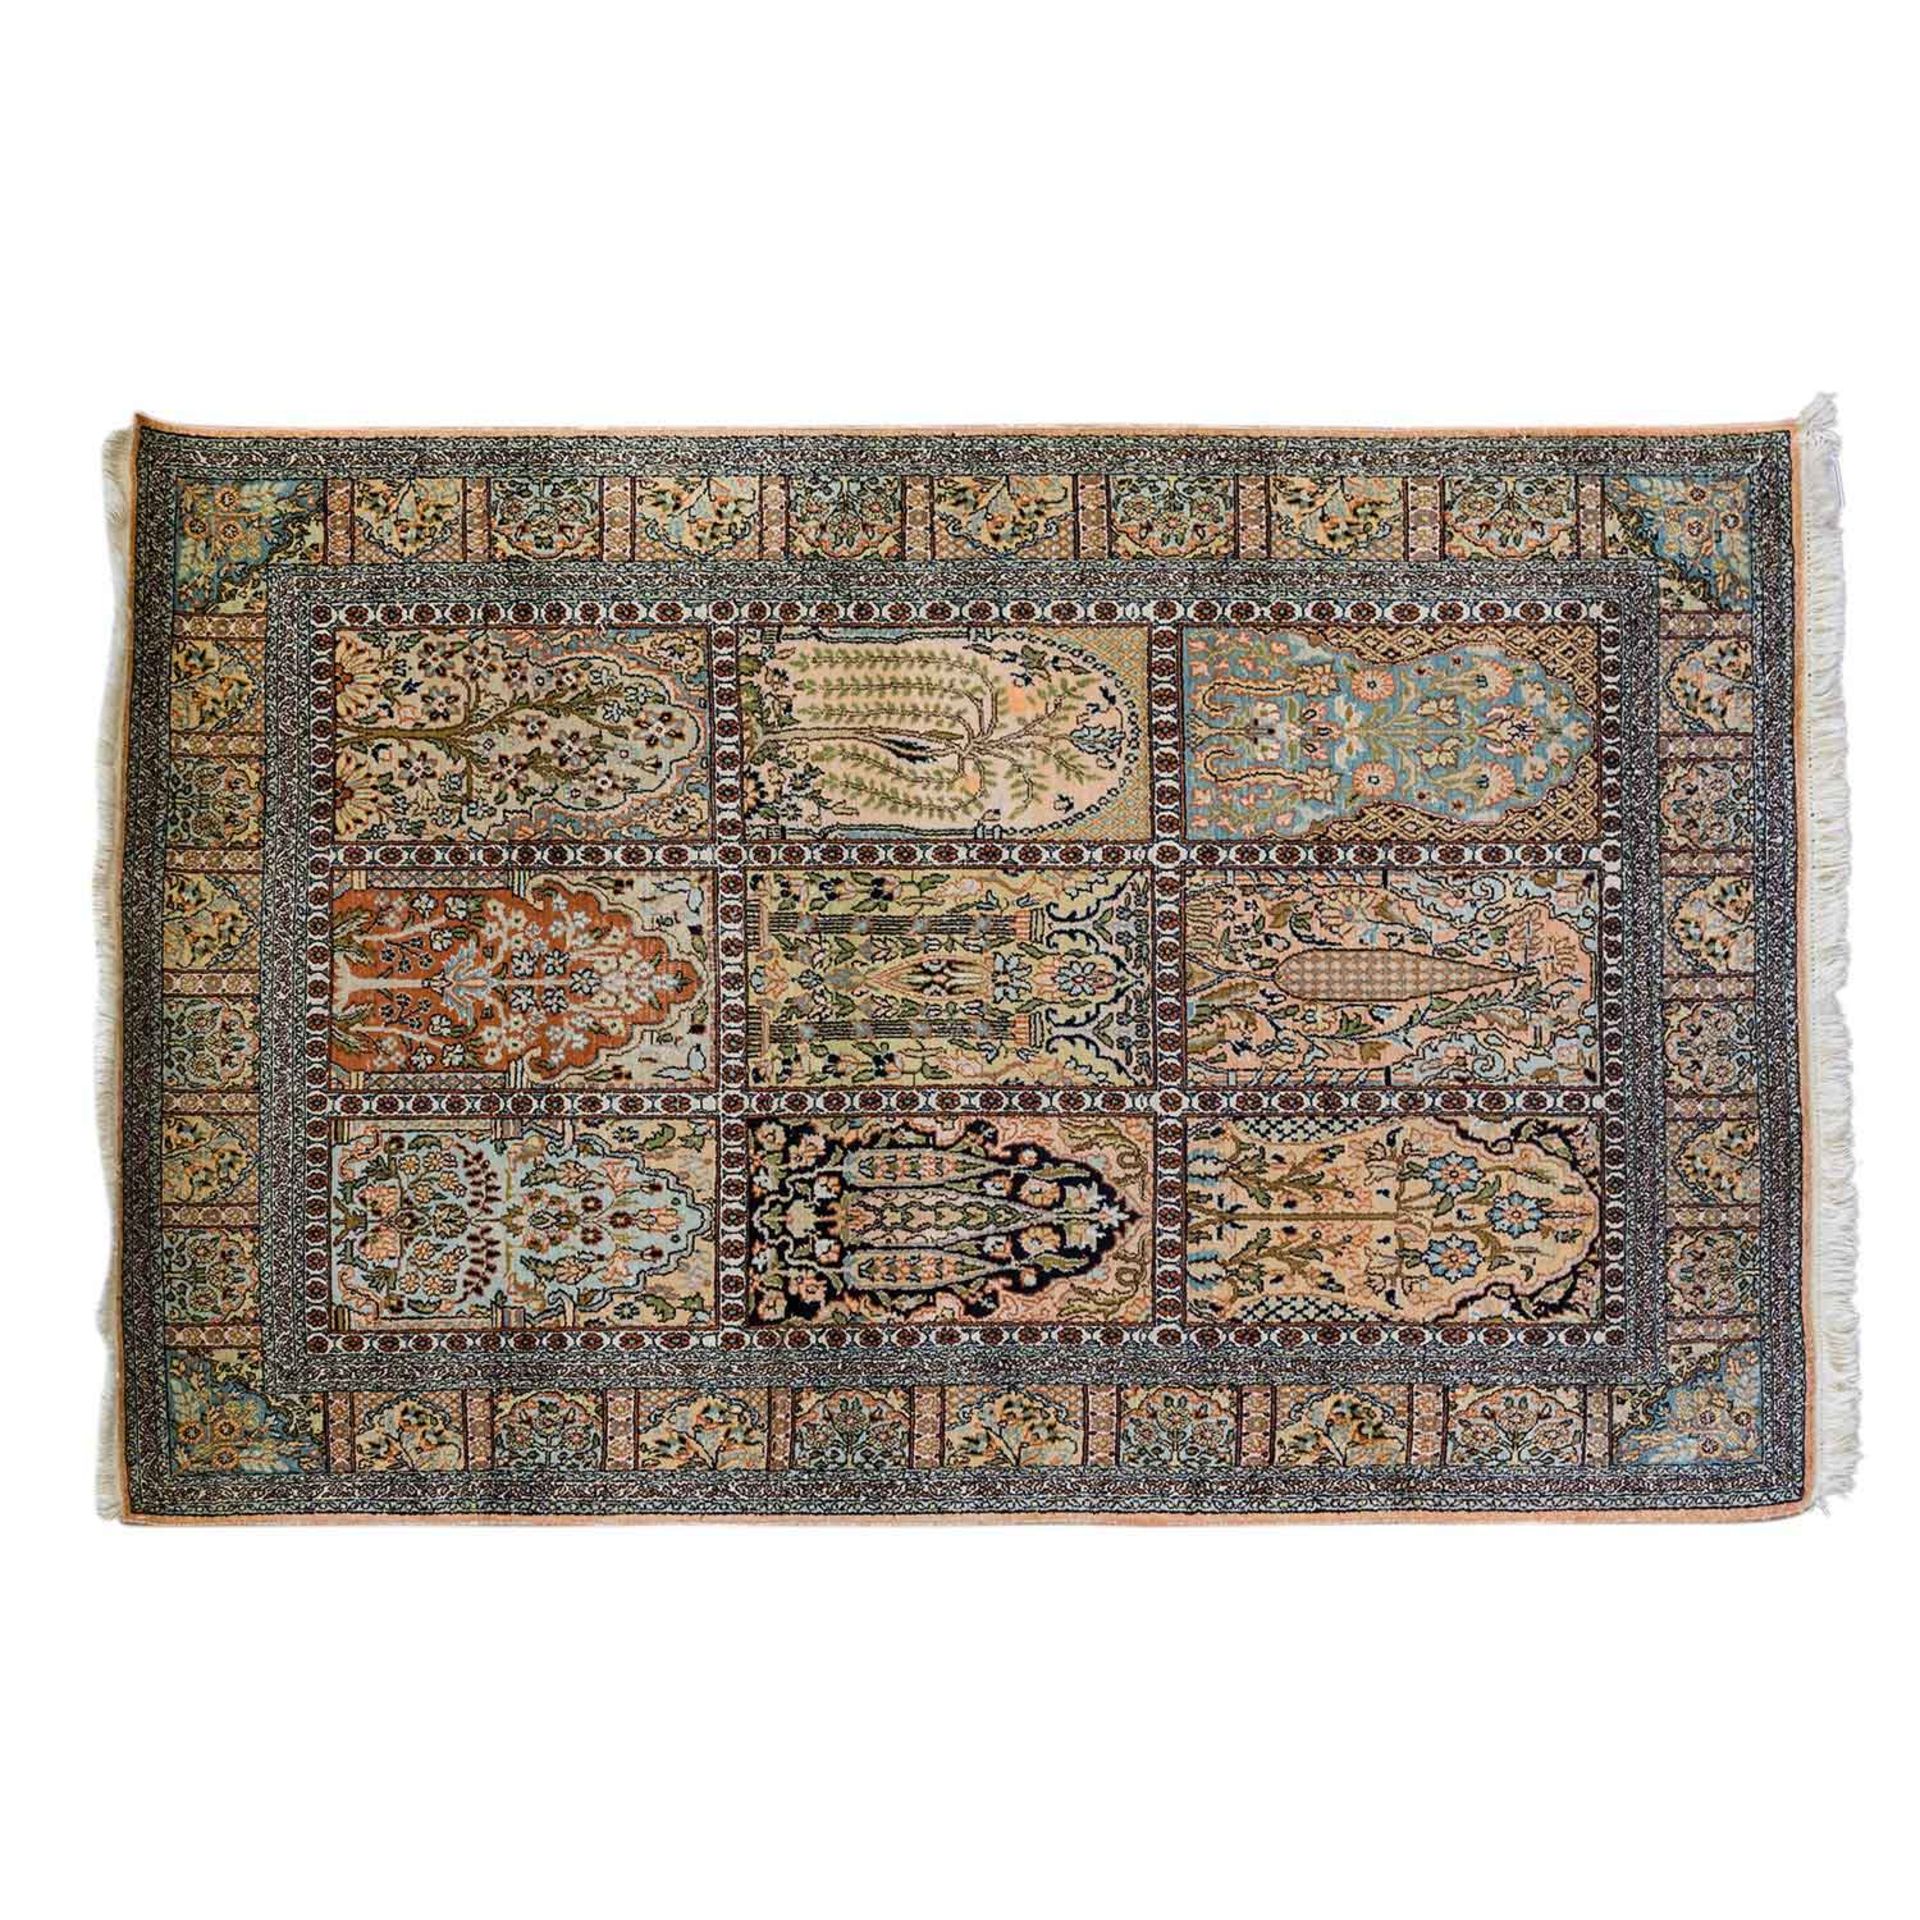 Orientteppich aus Kaschmirseide. 20. Jh., ca. 182x123 cm das Innenfeld und die Bordüre sind